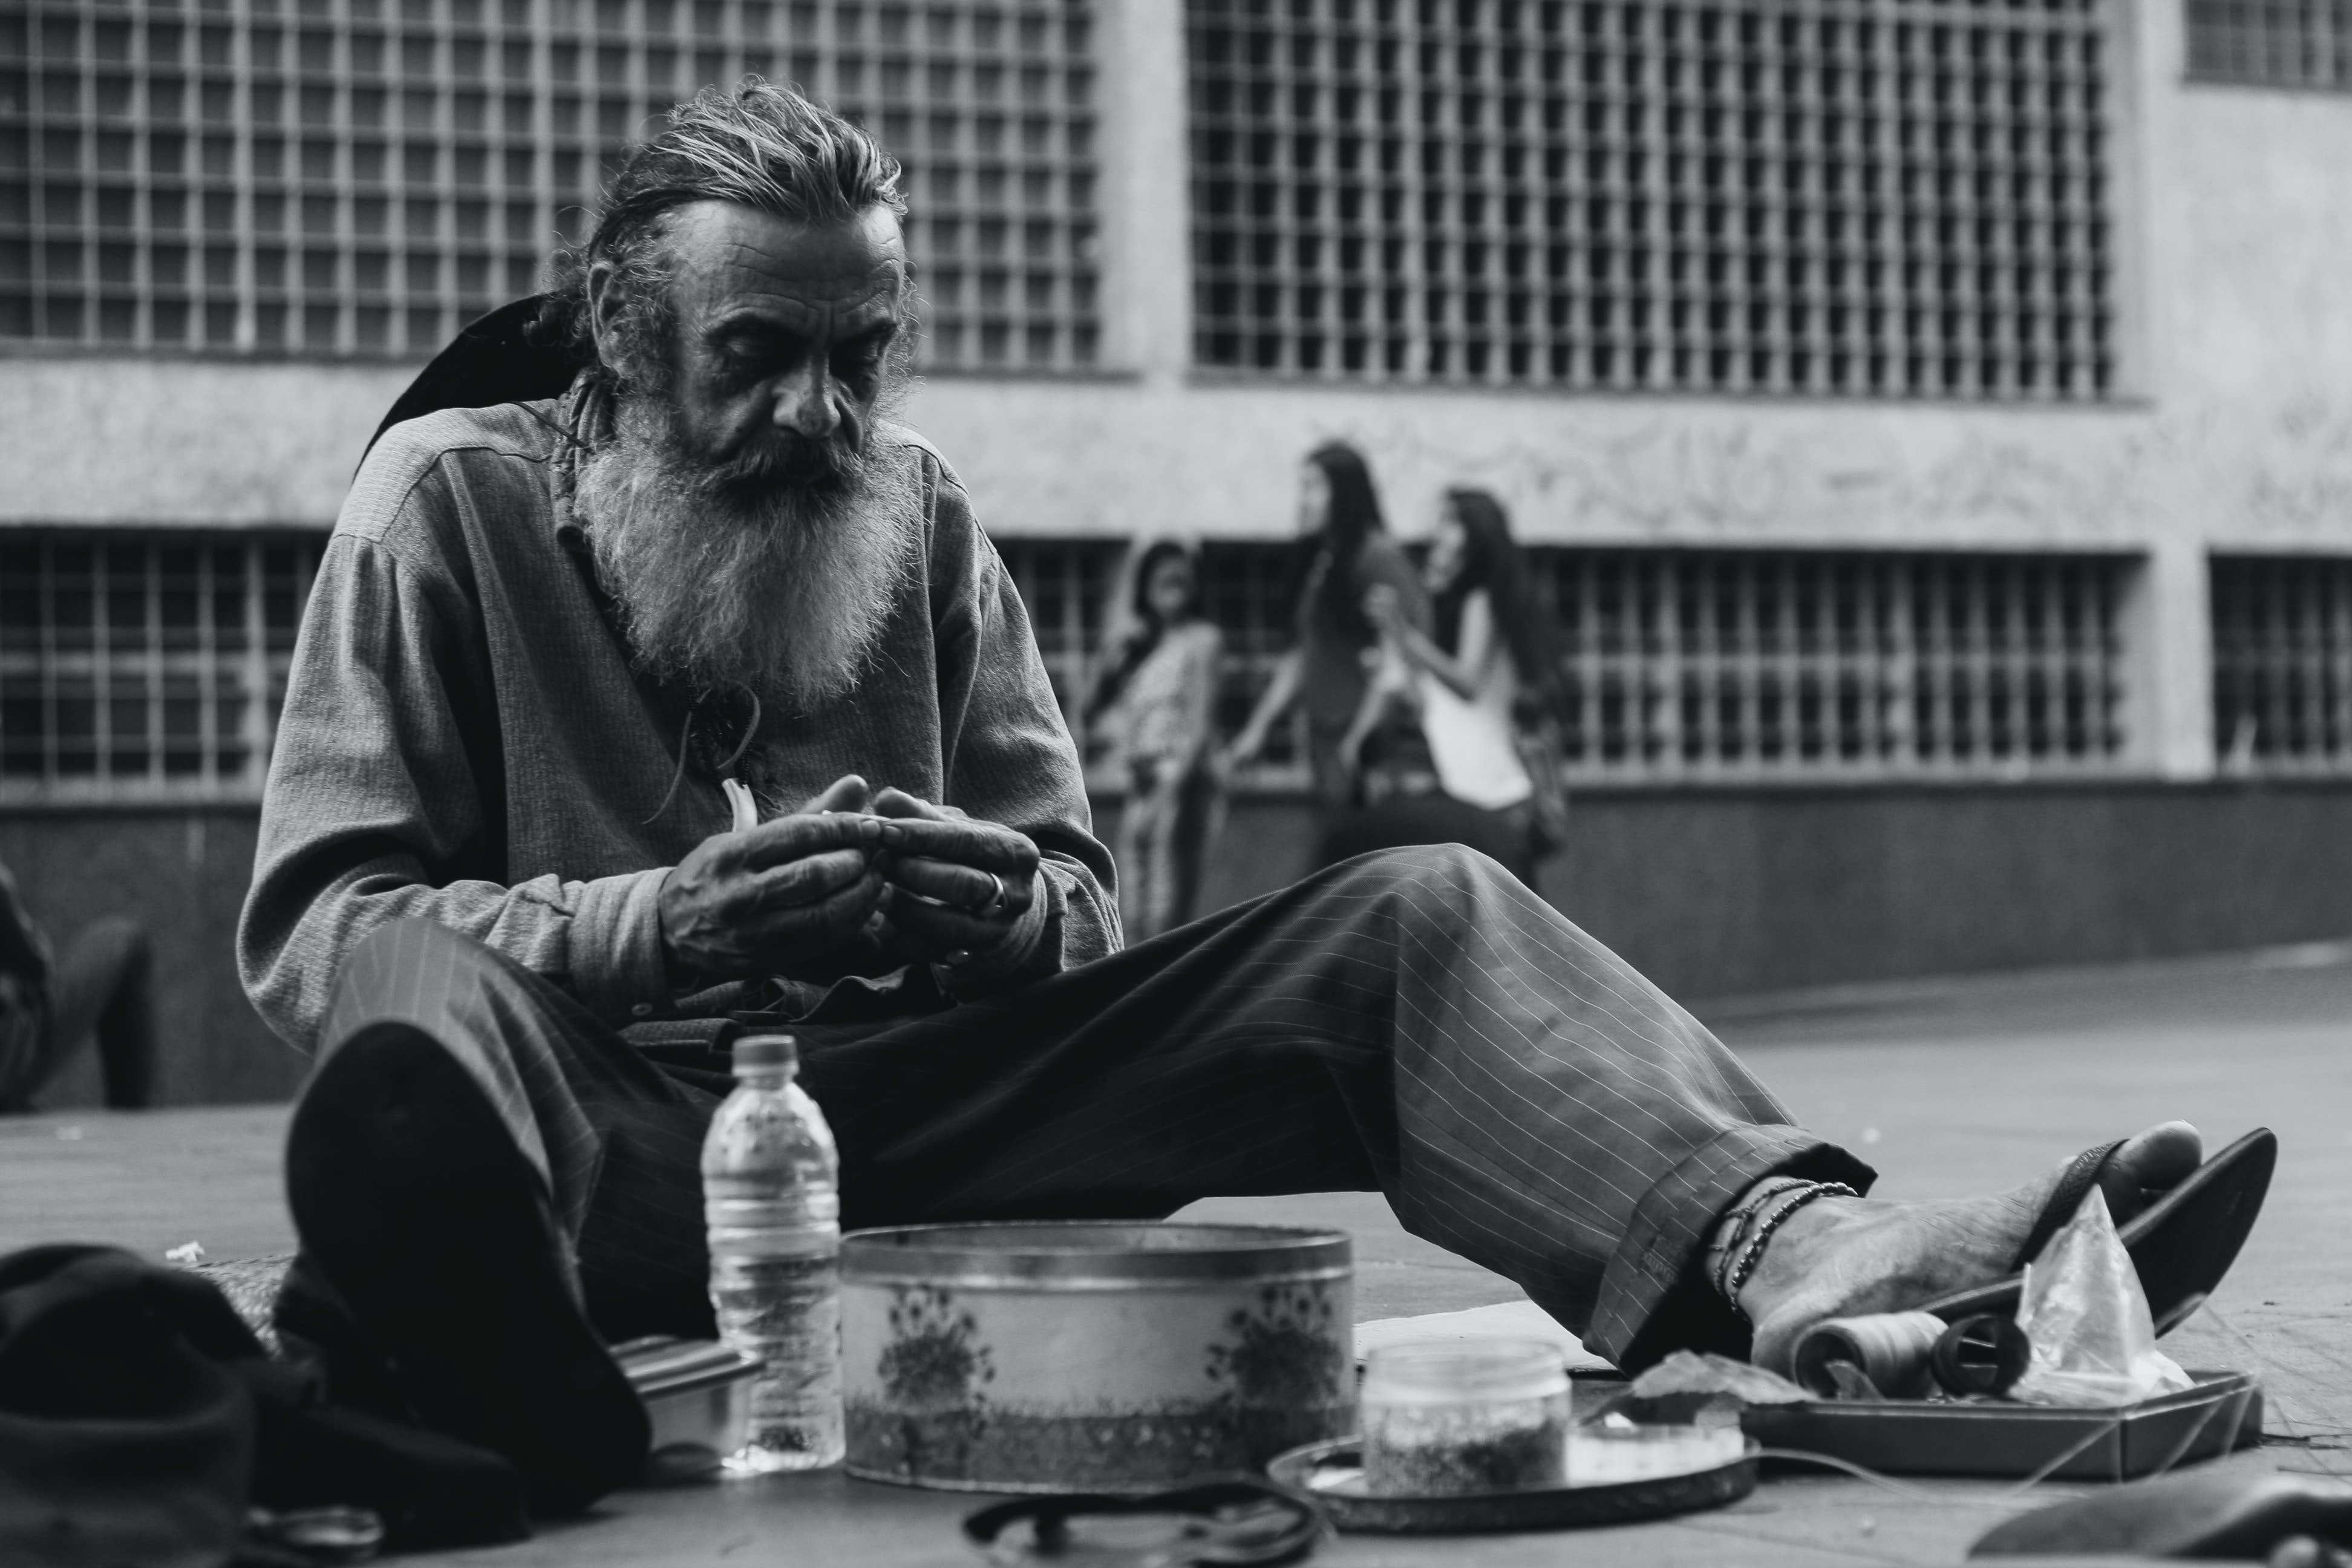 Un mendigo pide ayuda en la calle. | Foto: Pexels